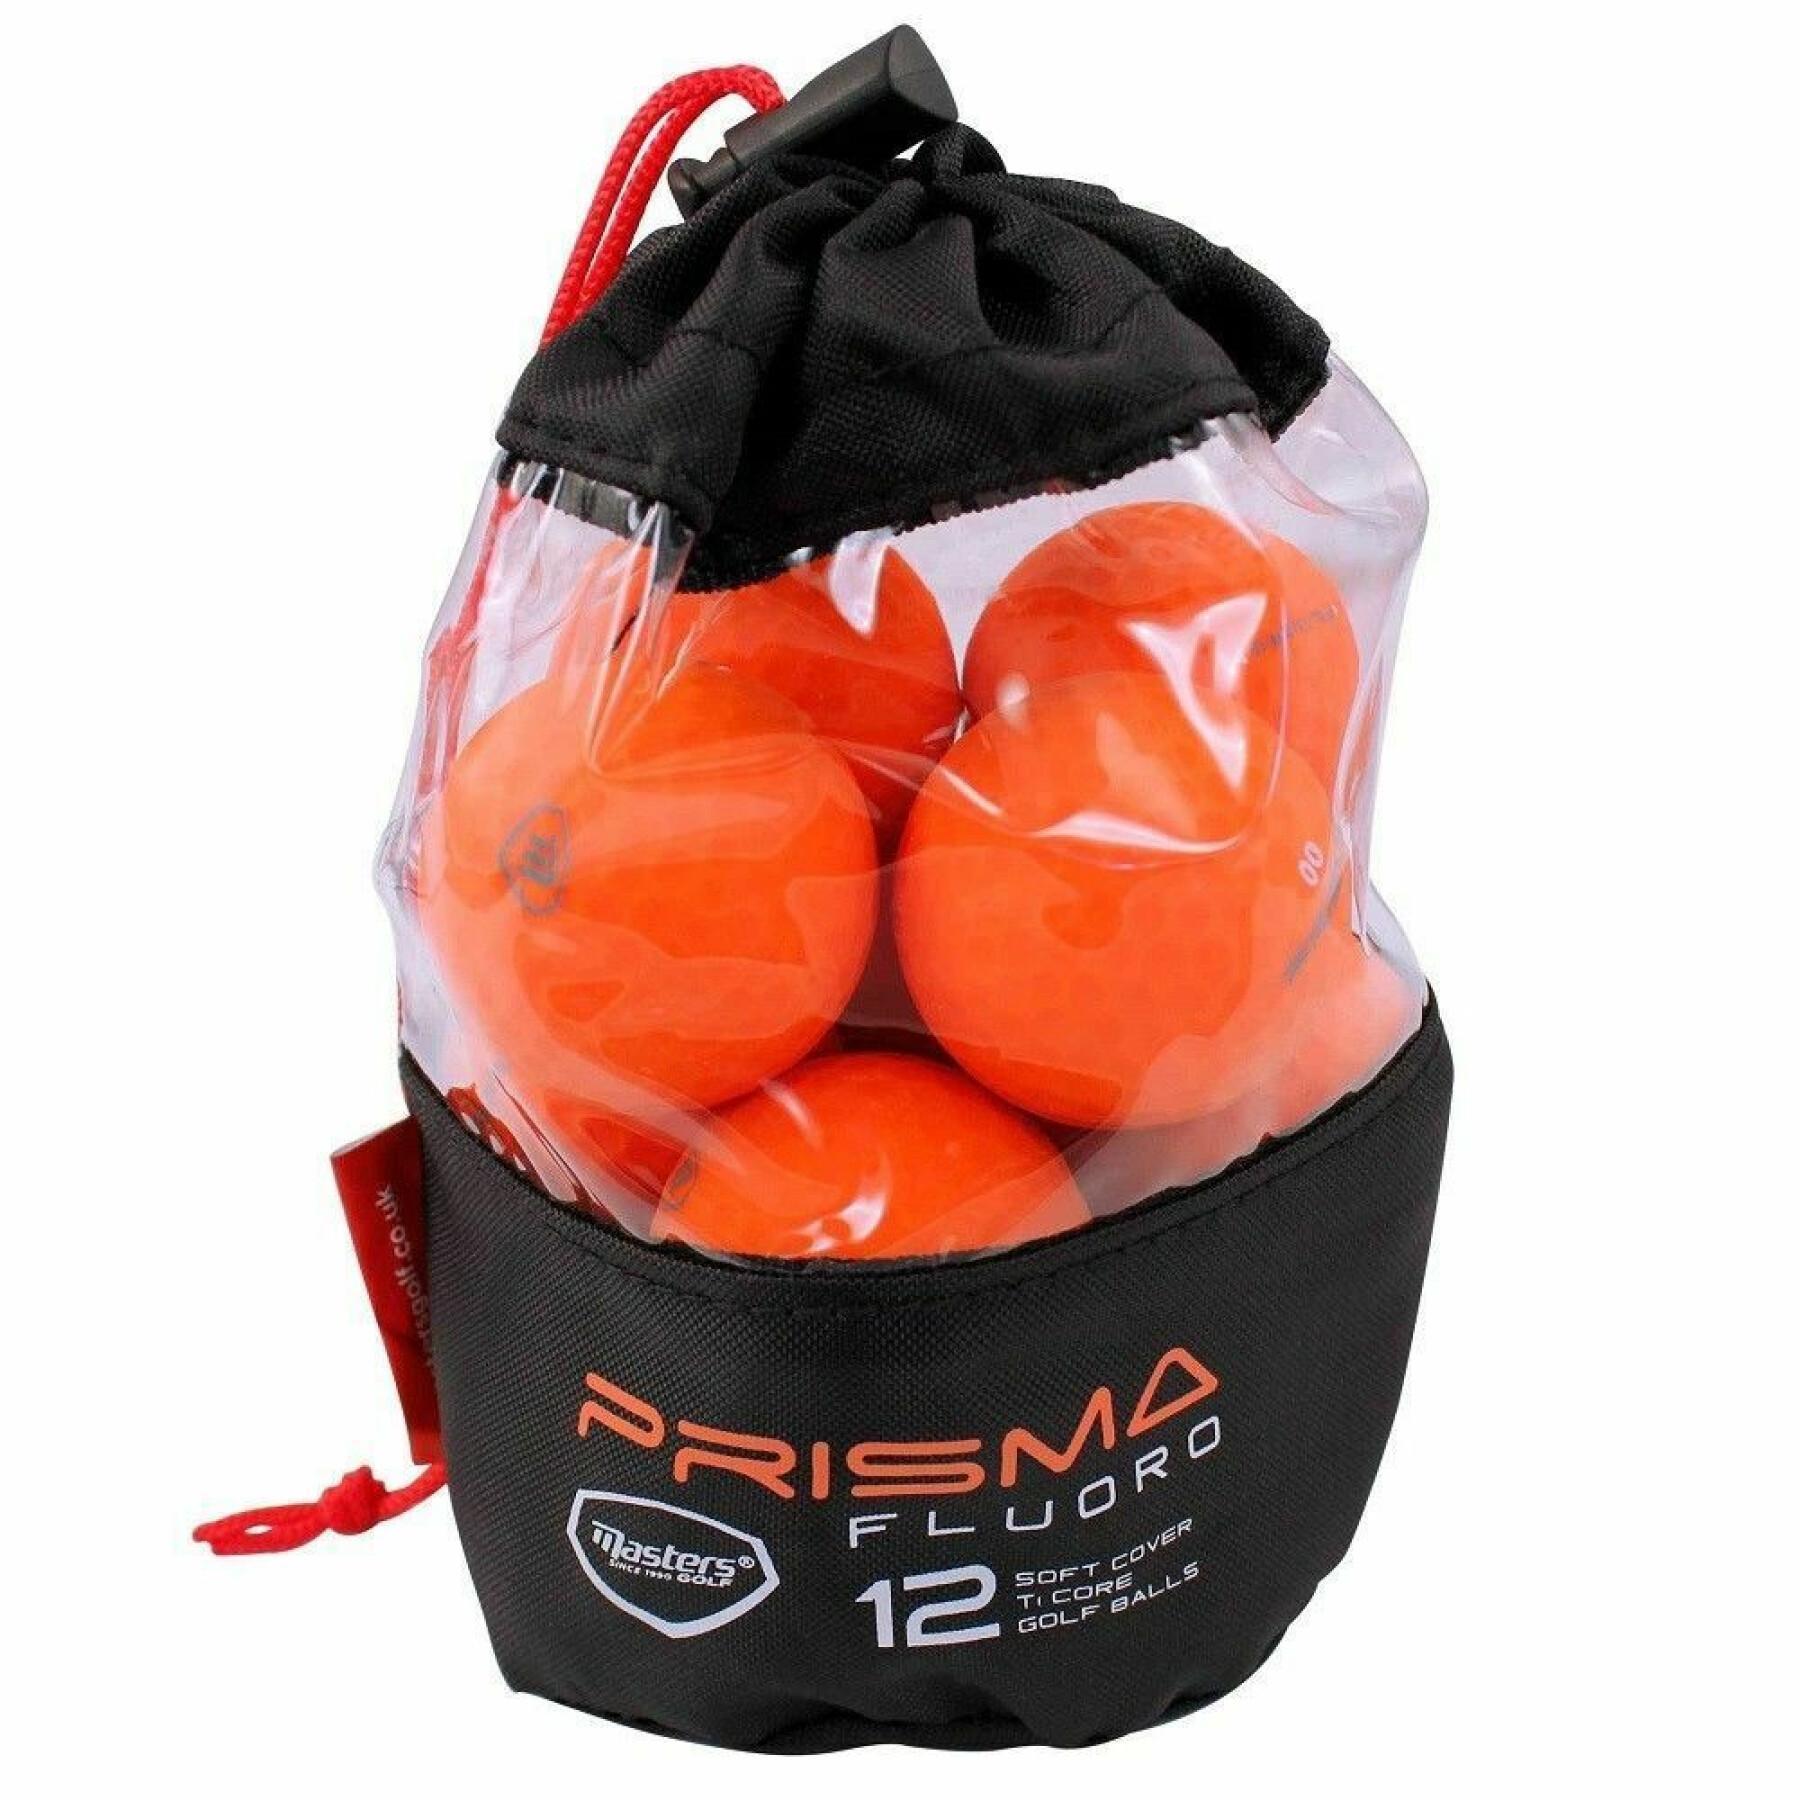 Box of 12 balls Prisma Titanium